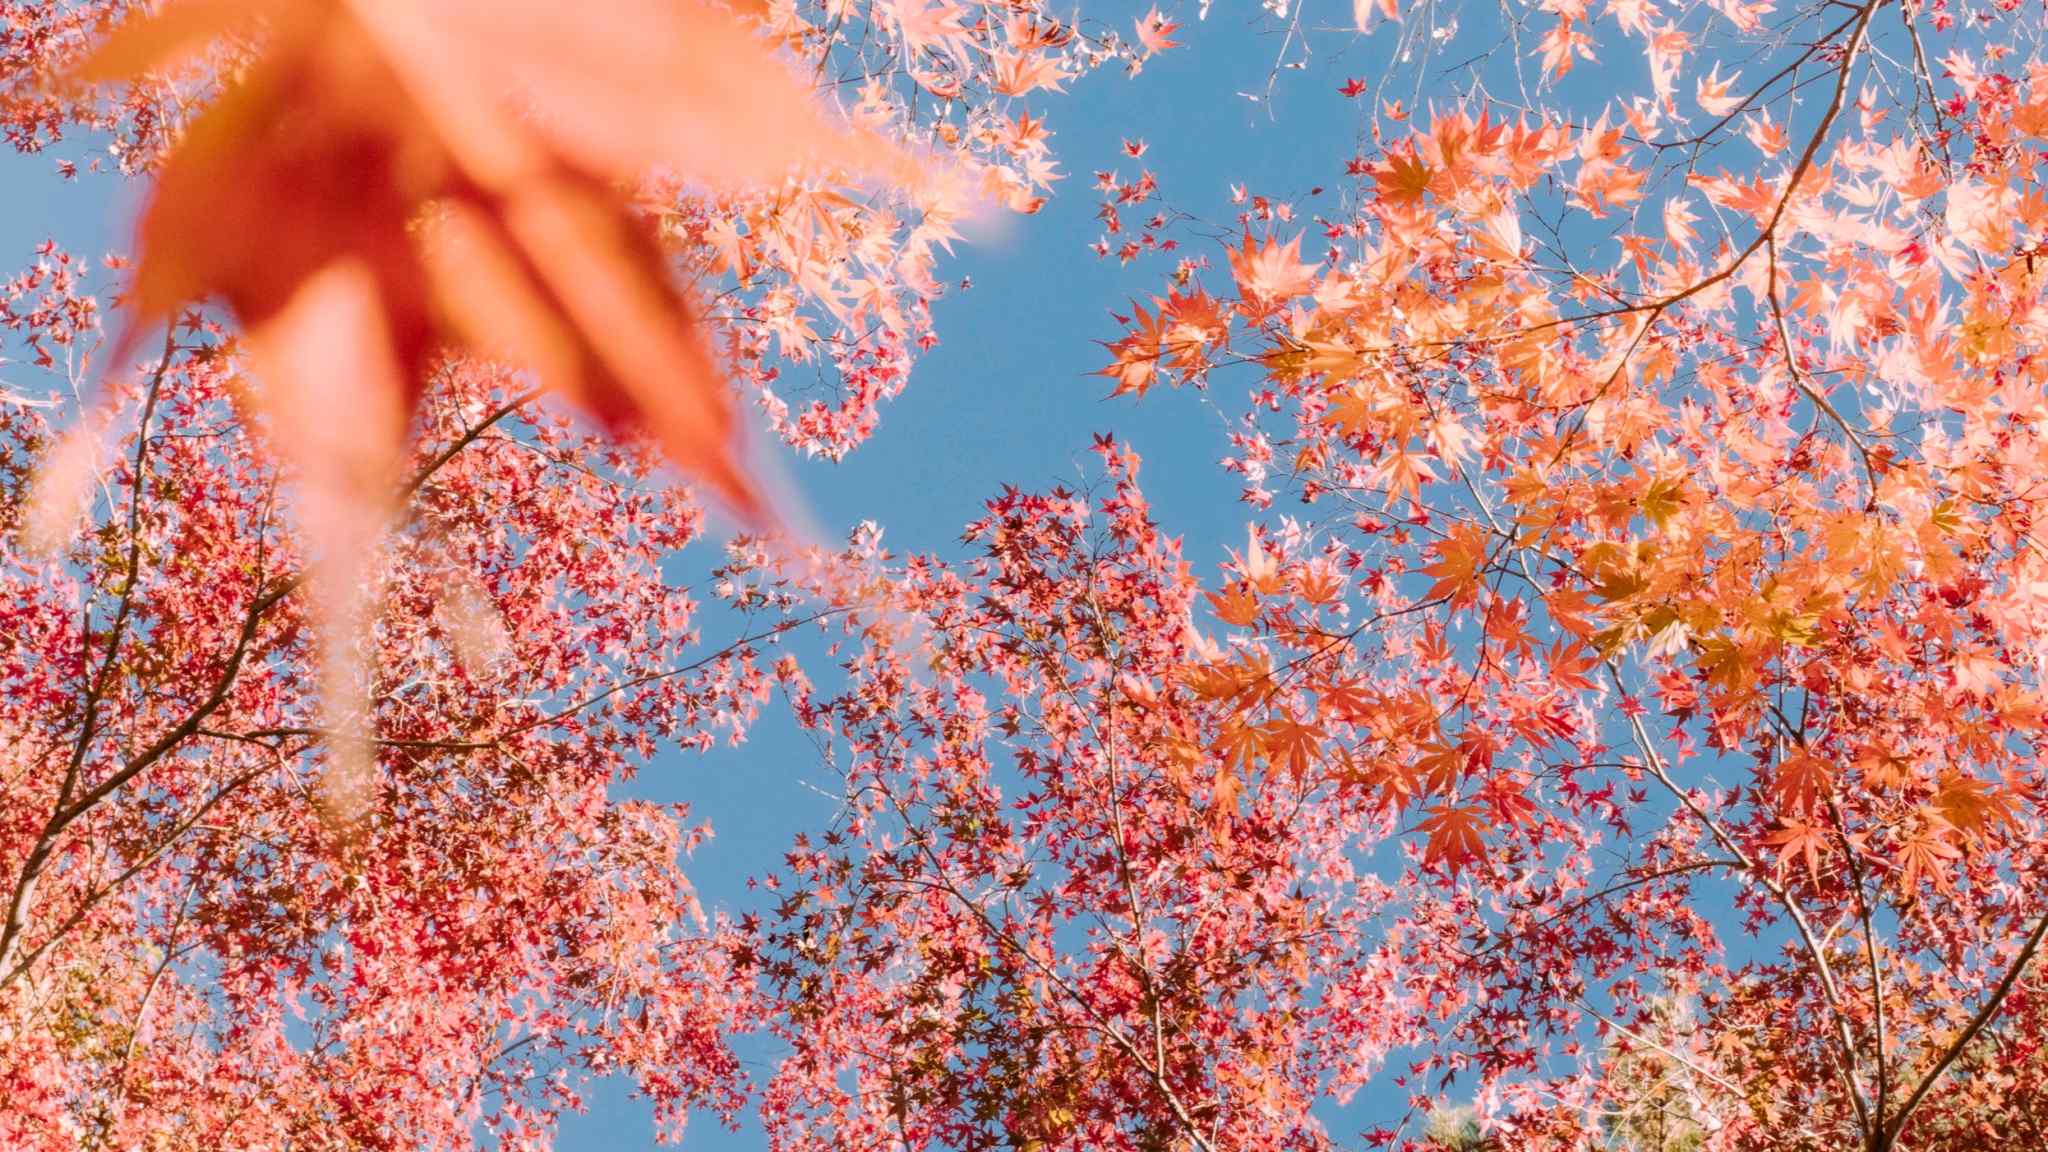 Autumn in Tokyo: a photo essay